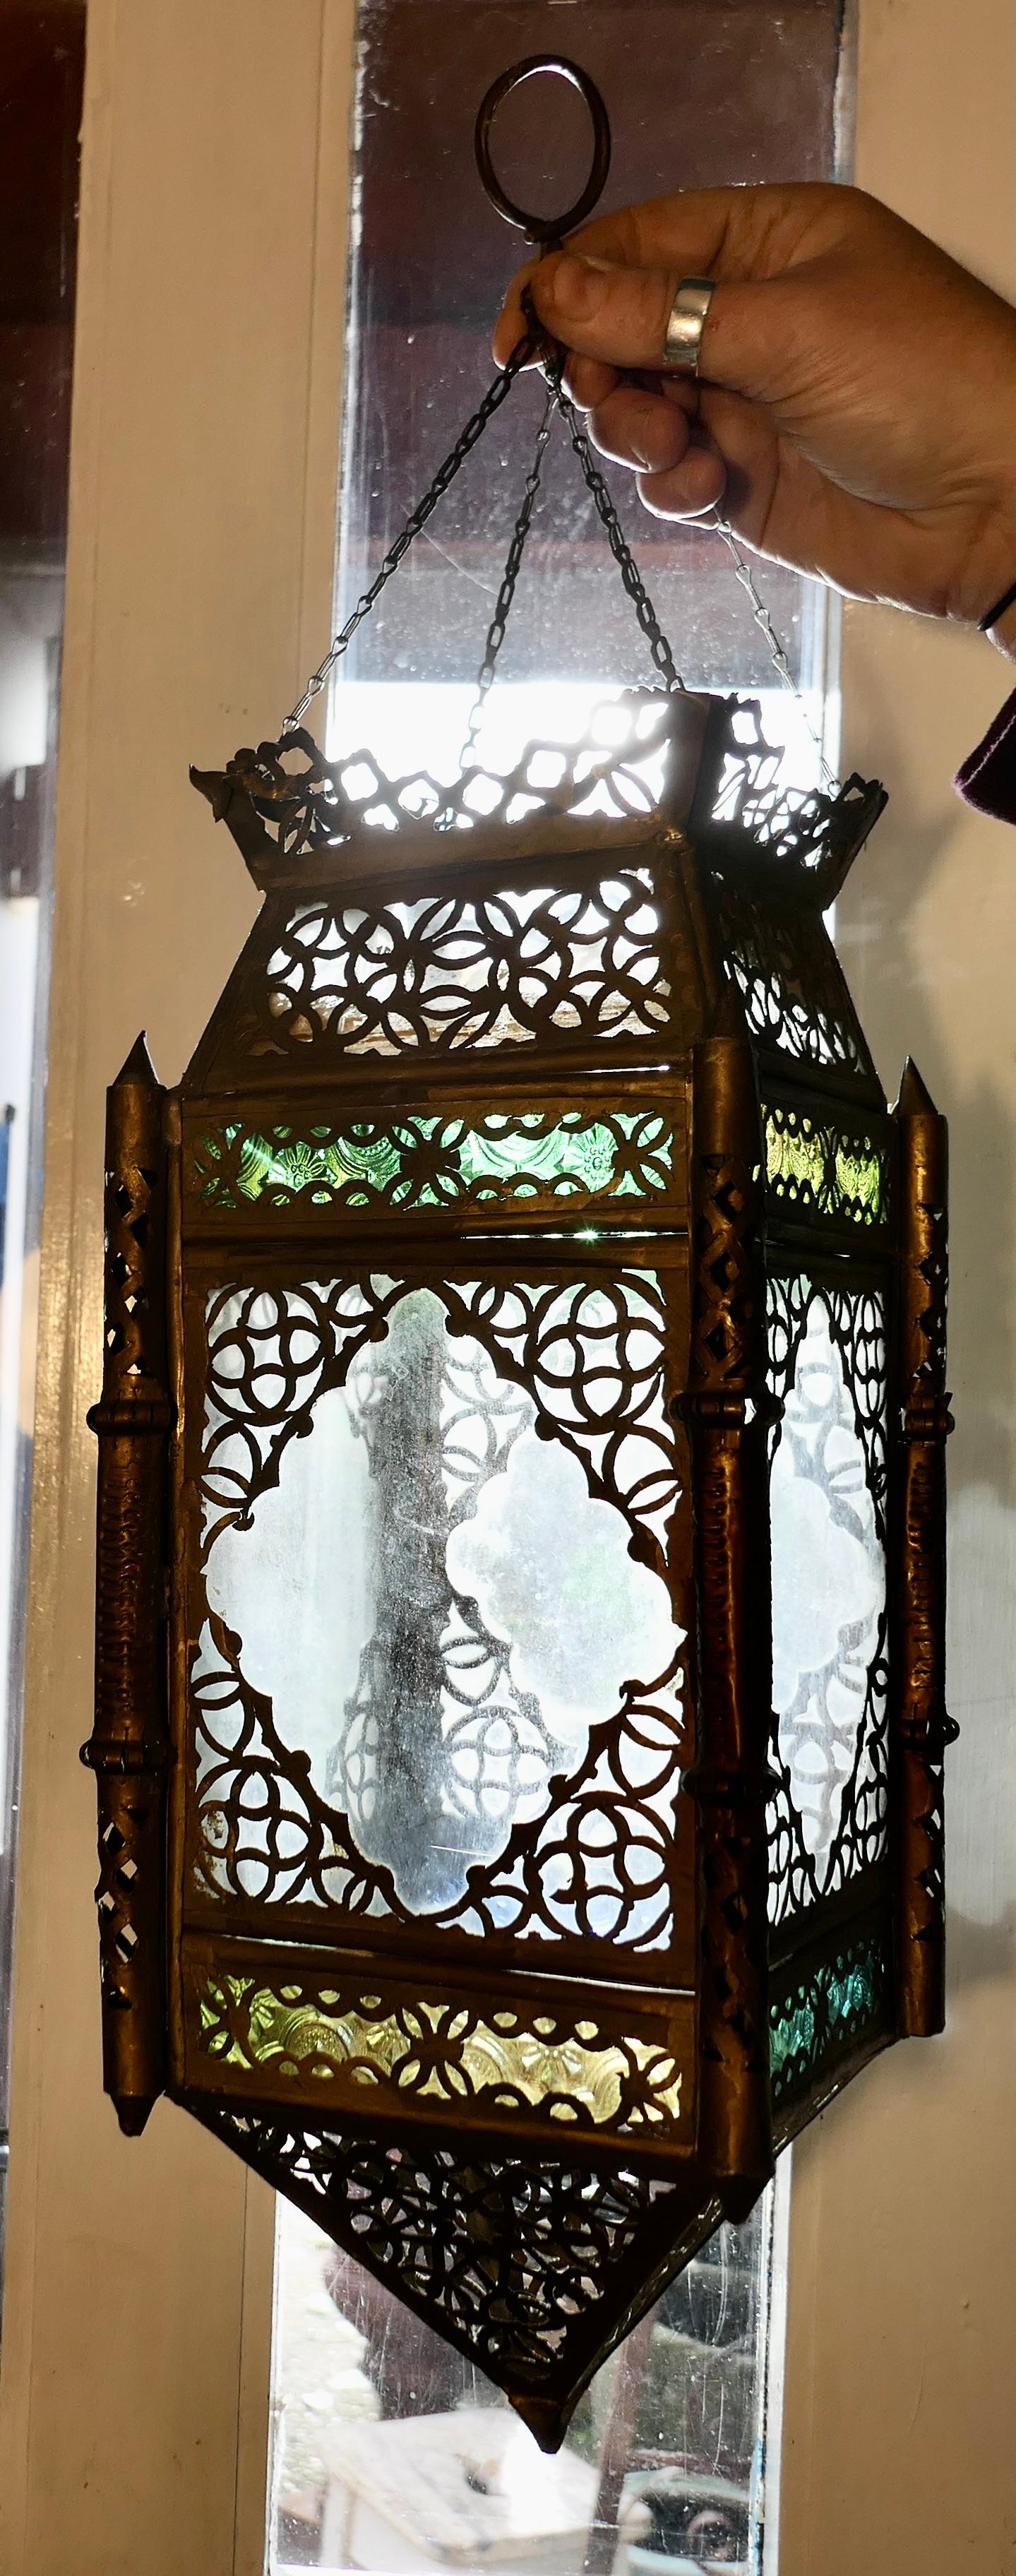 Abat-jour de lanterne nord-africaine en laiton et vitrail

Il s'agit d'une belle pièce, de forme rectangulaire, avec des panneaux de verre en forme de diamant décorés de filigrane en laiton et de petits panneaux de verre coloré en ambre et en vert.